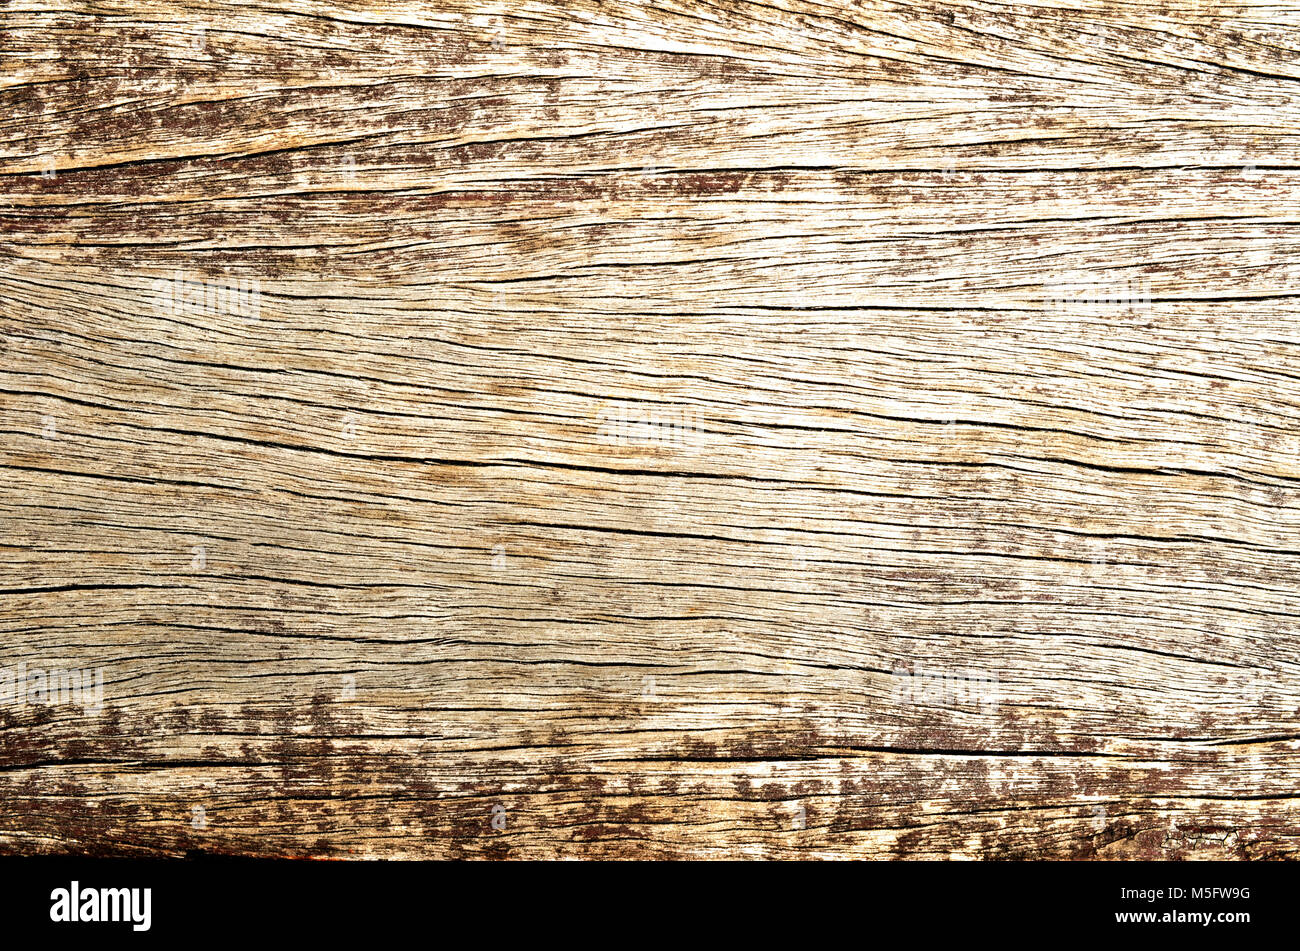 Grunge Textur Fleck auf altem Holz Platte, Nahaufnahme foto Bild von Grunge Textur auf ein altes Holz platte Fleck vorhanden ein Detail der Textur und des Musters Stockfoto